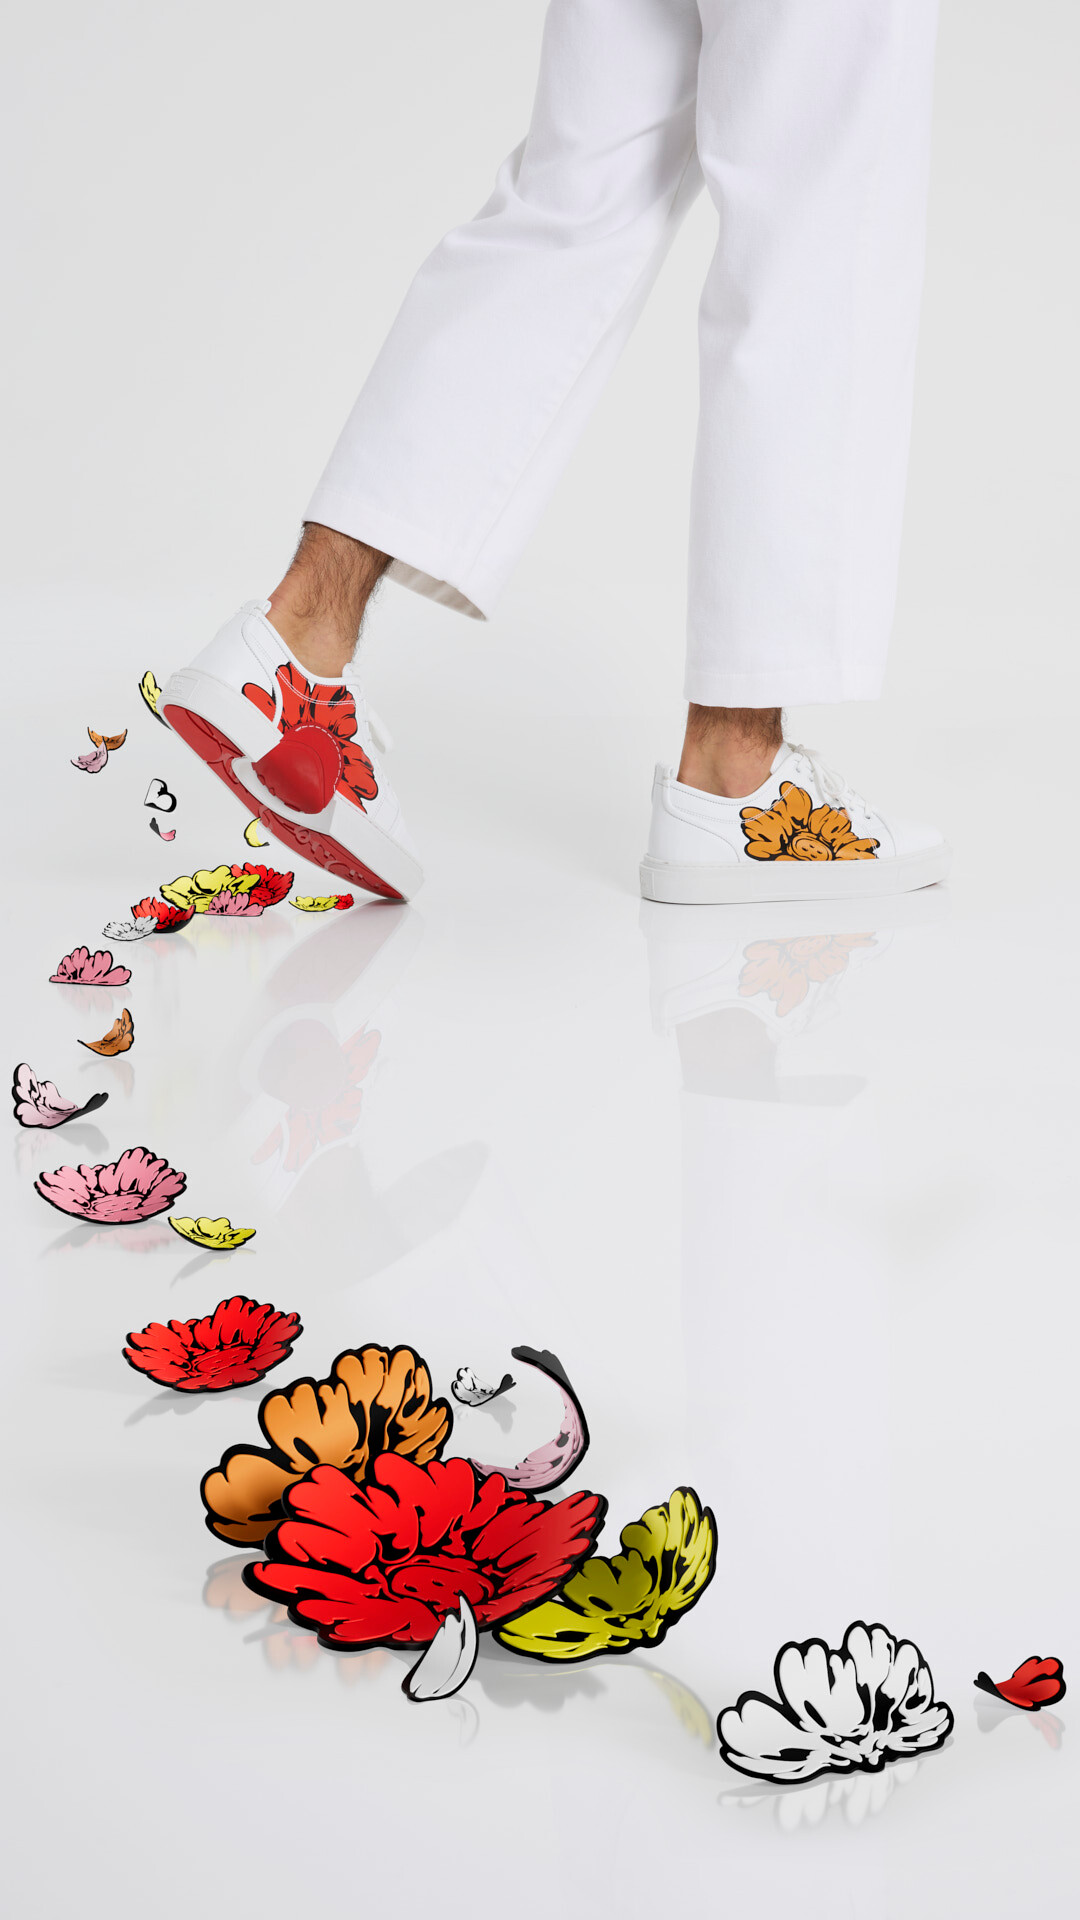 Christian Louboutin выпускают коллекцию обуви с токийским художником Shun Sudo